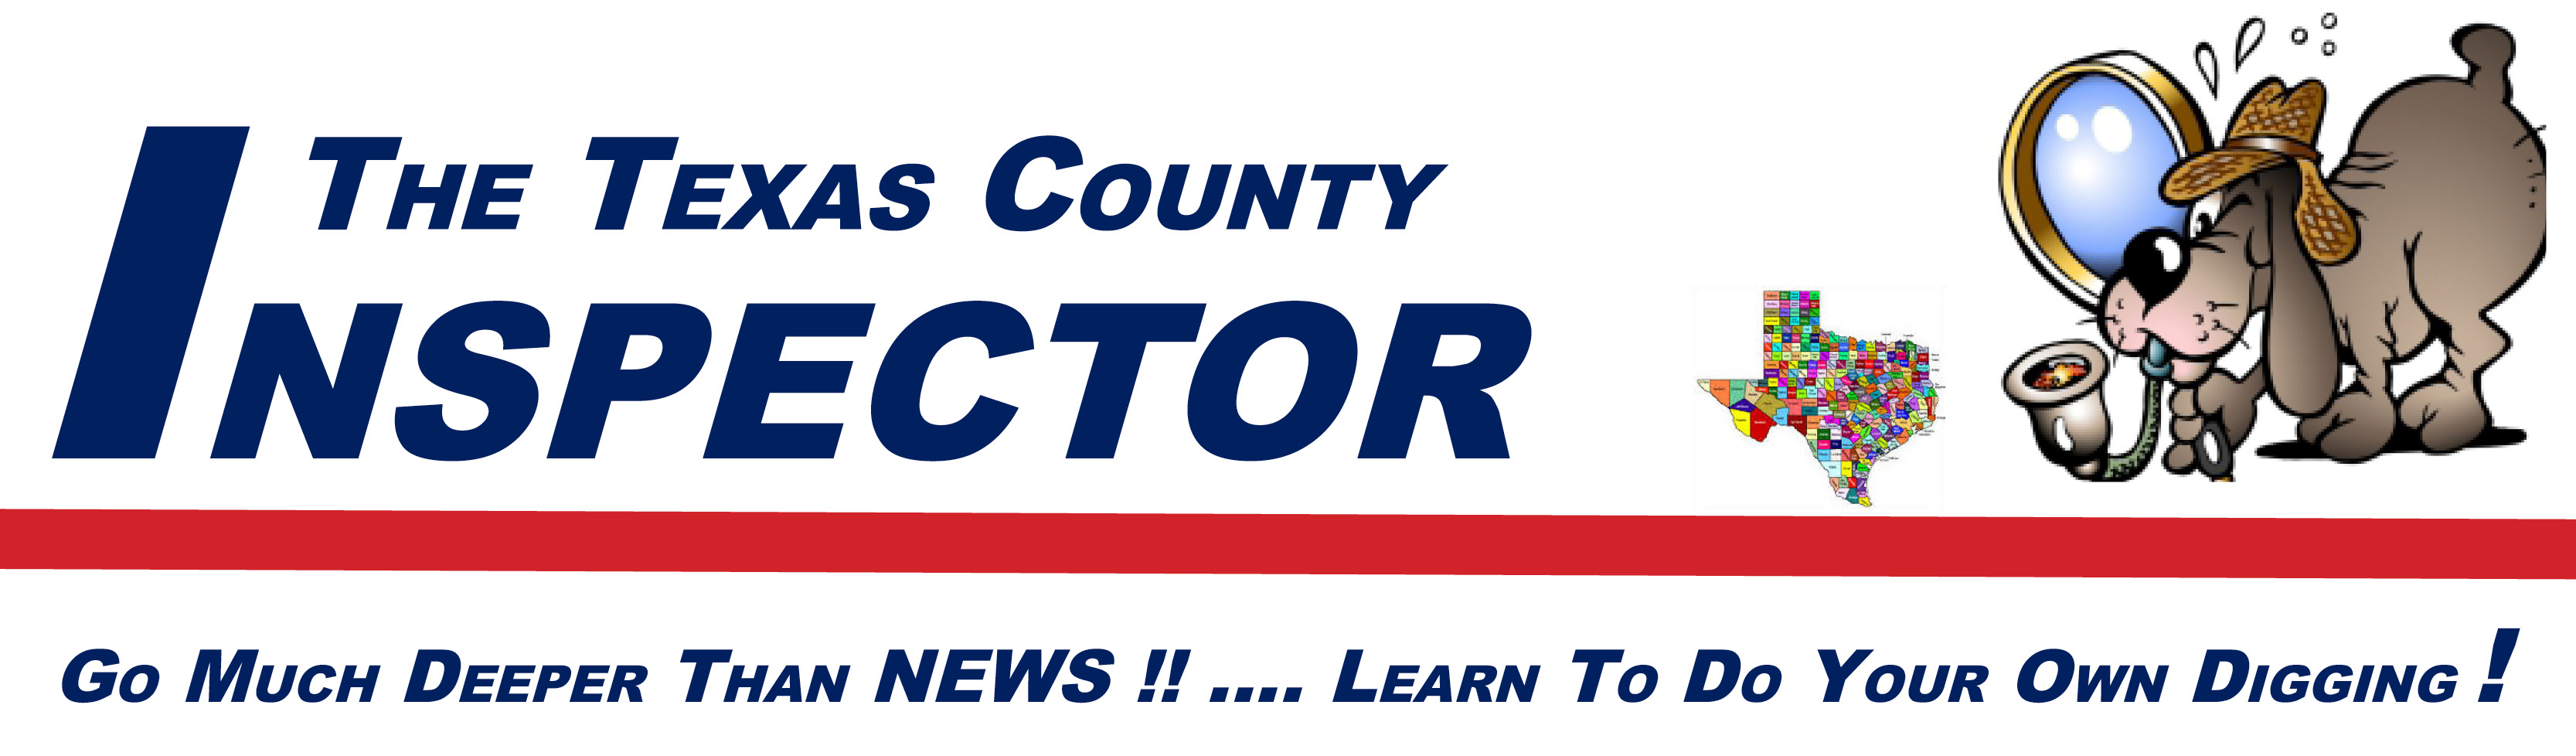 The Texas County Inspector logo